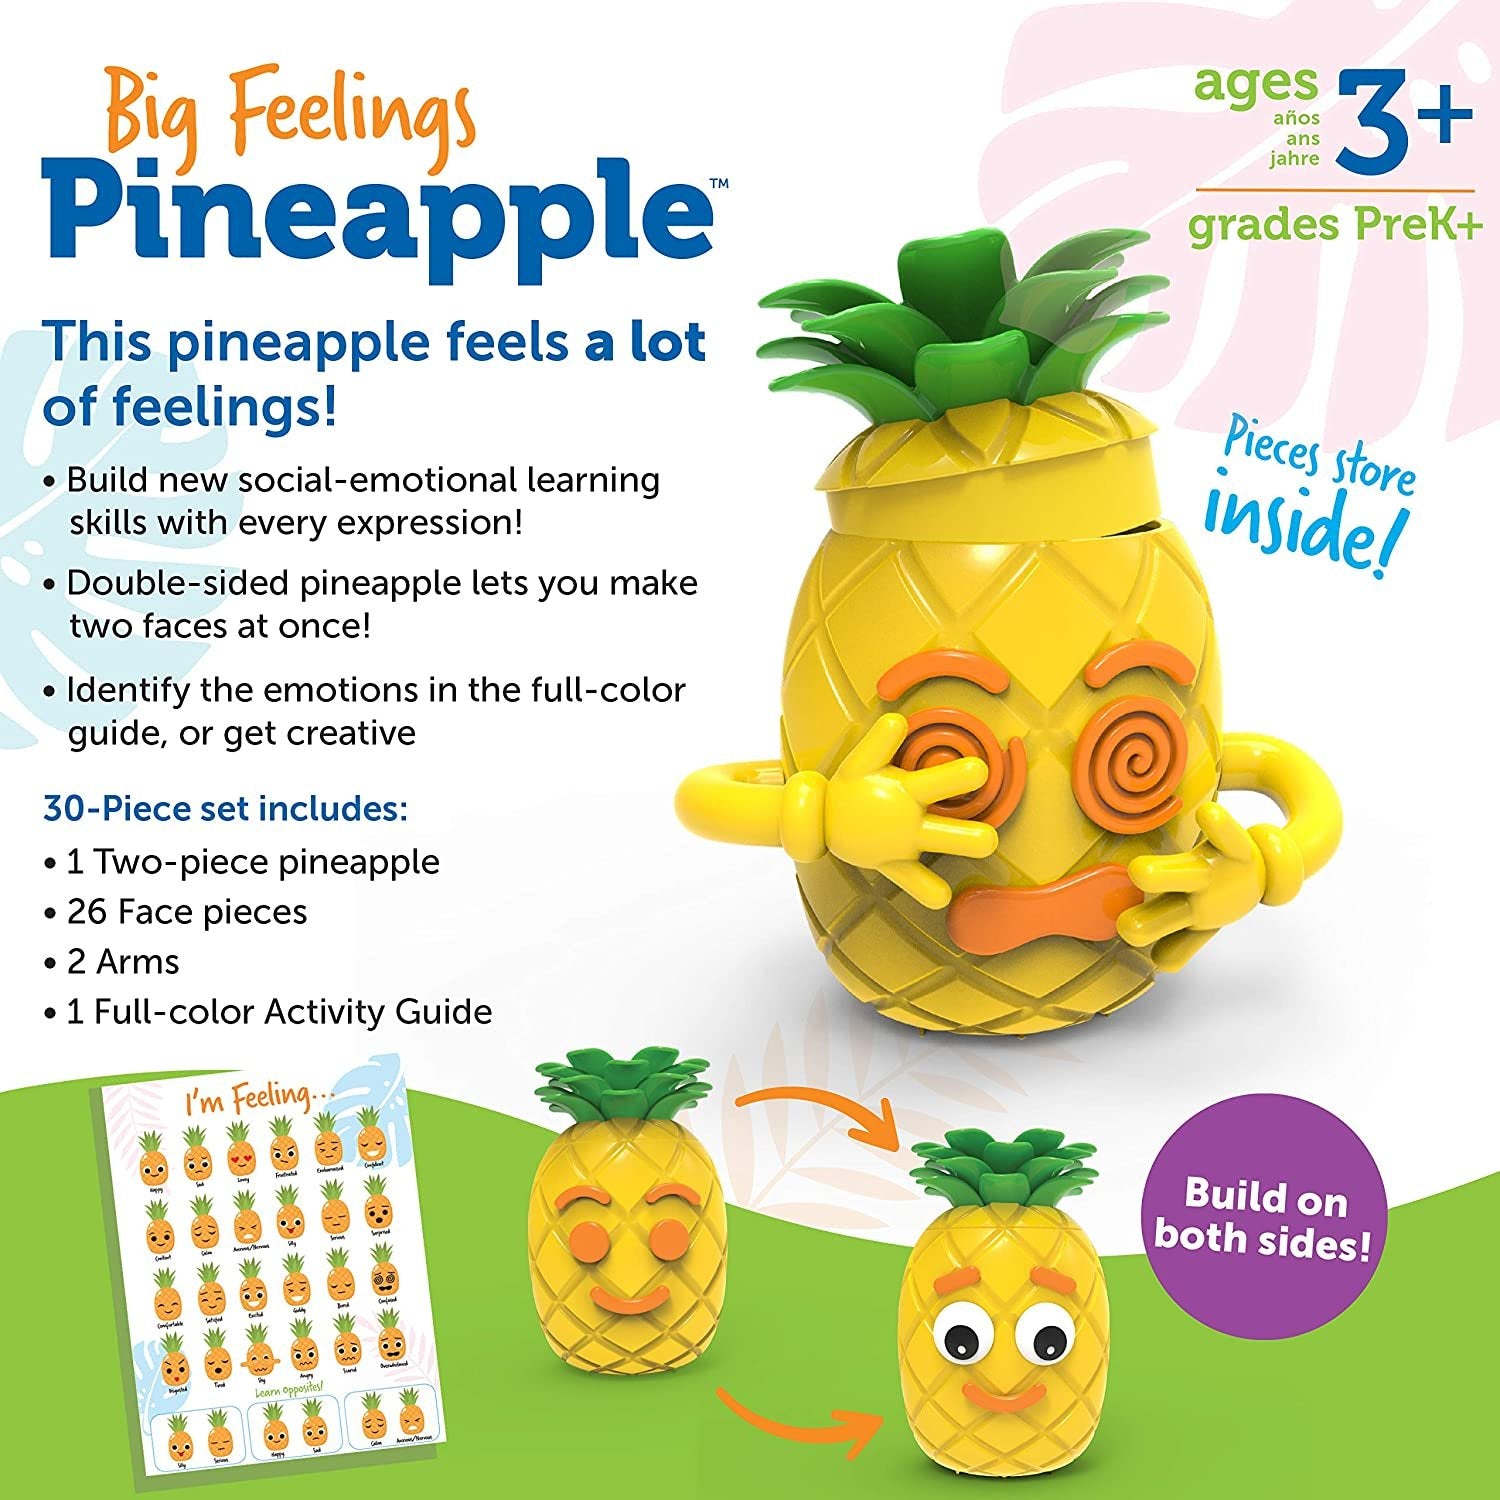 Big Feelings Pineapple - Albagame